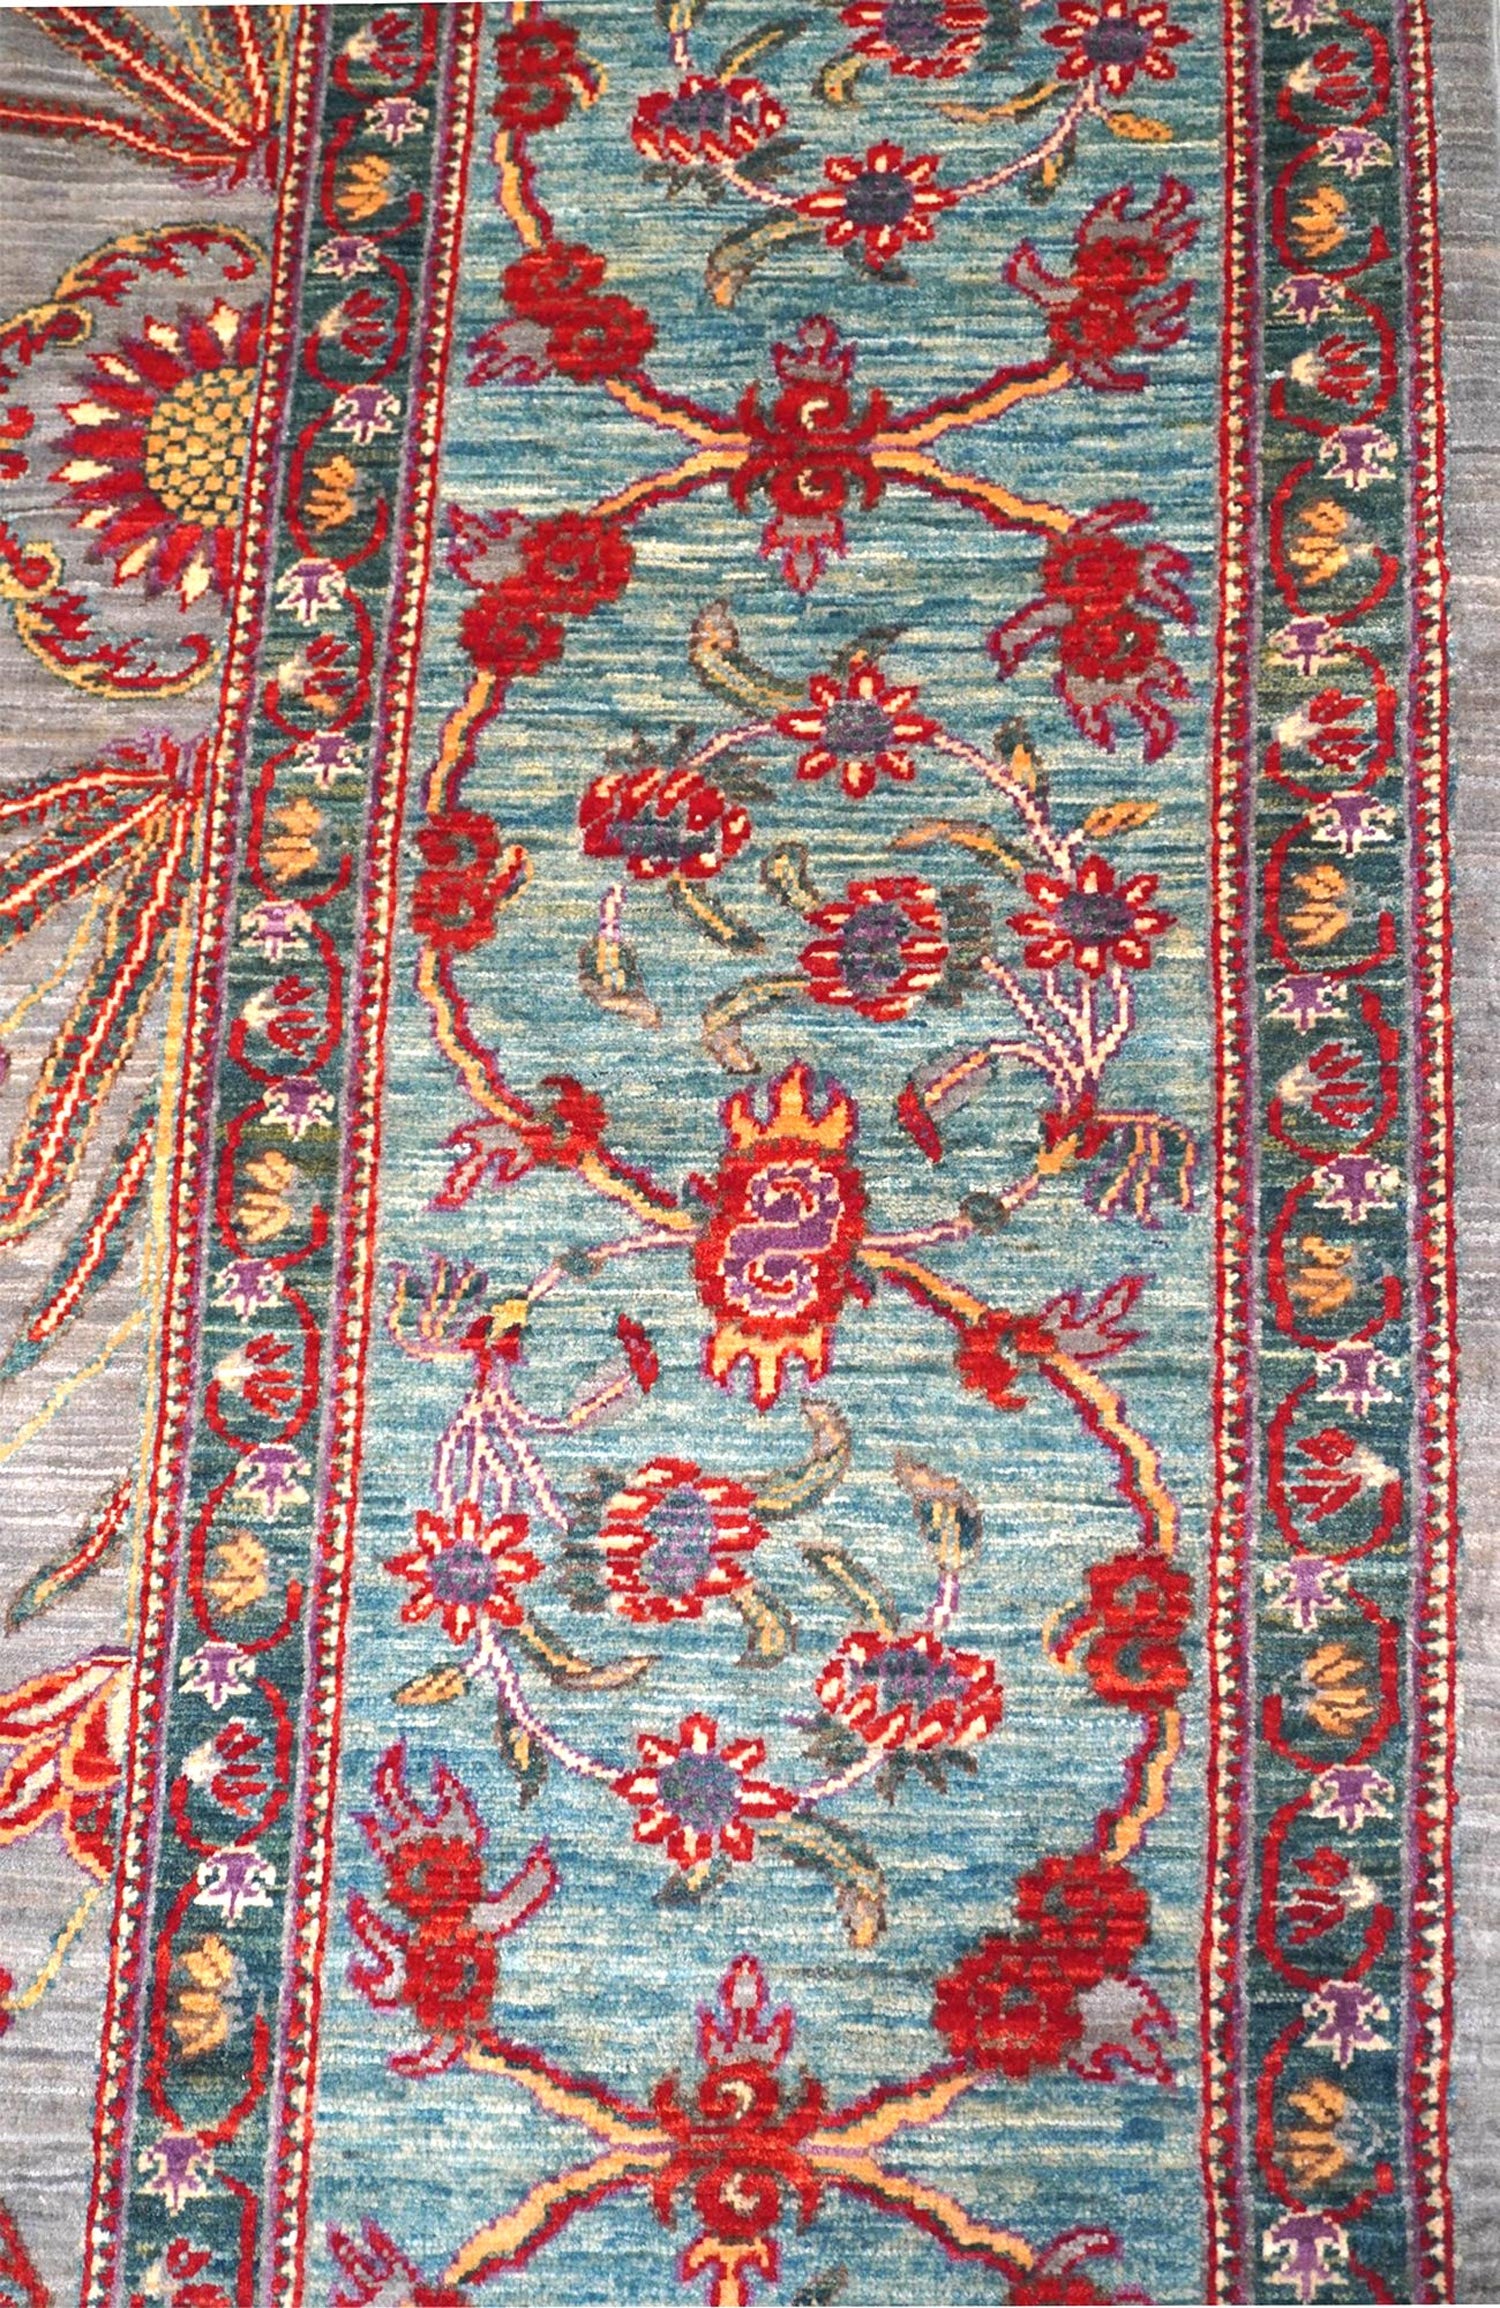 Moghul Handwoven Traditional Rug, J64411